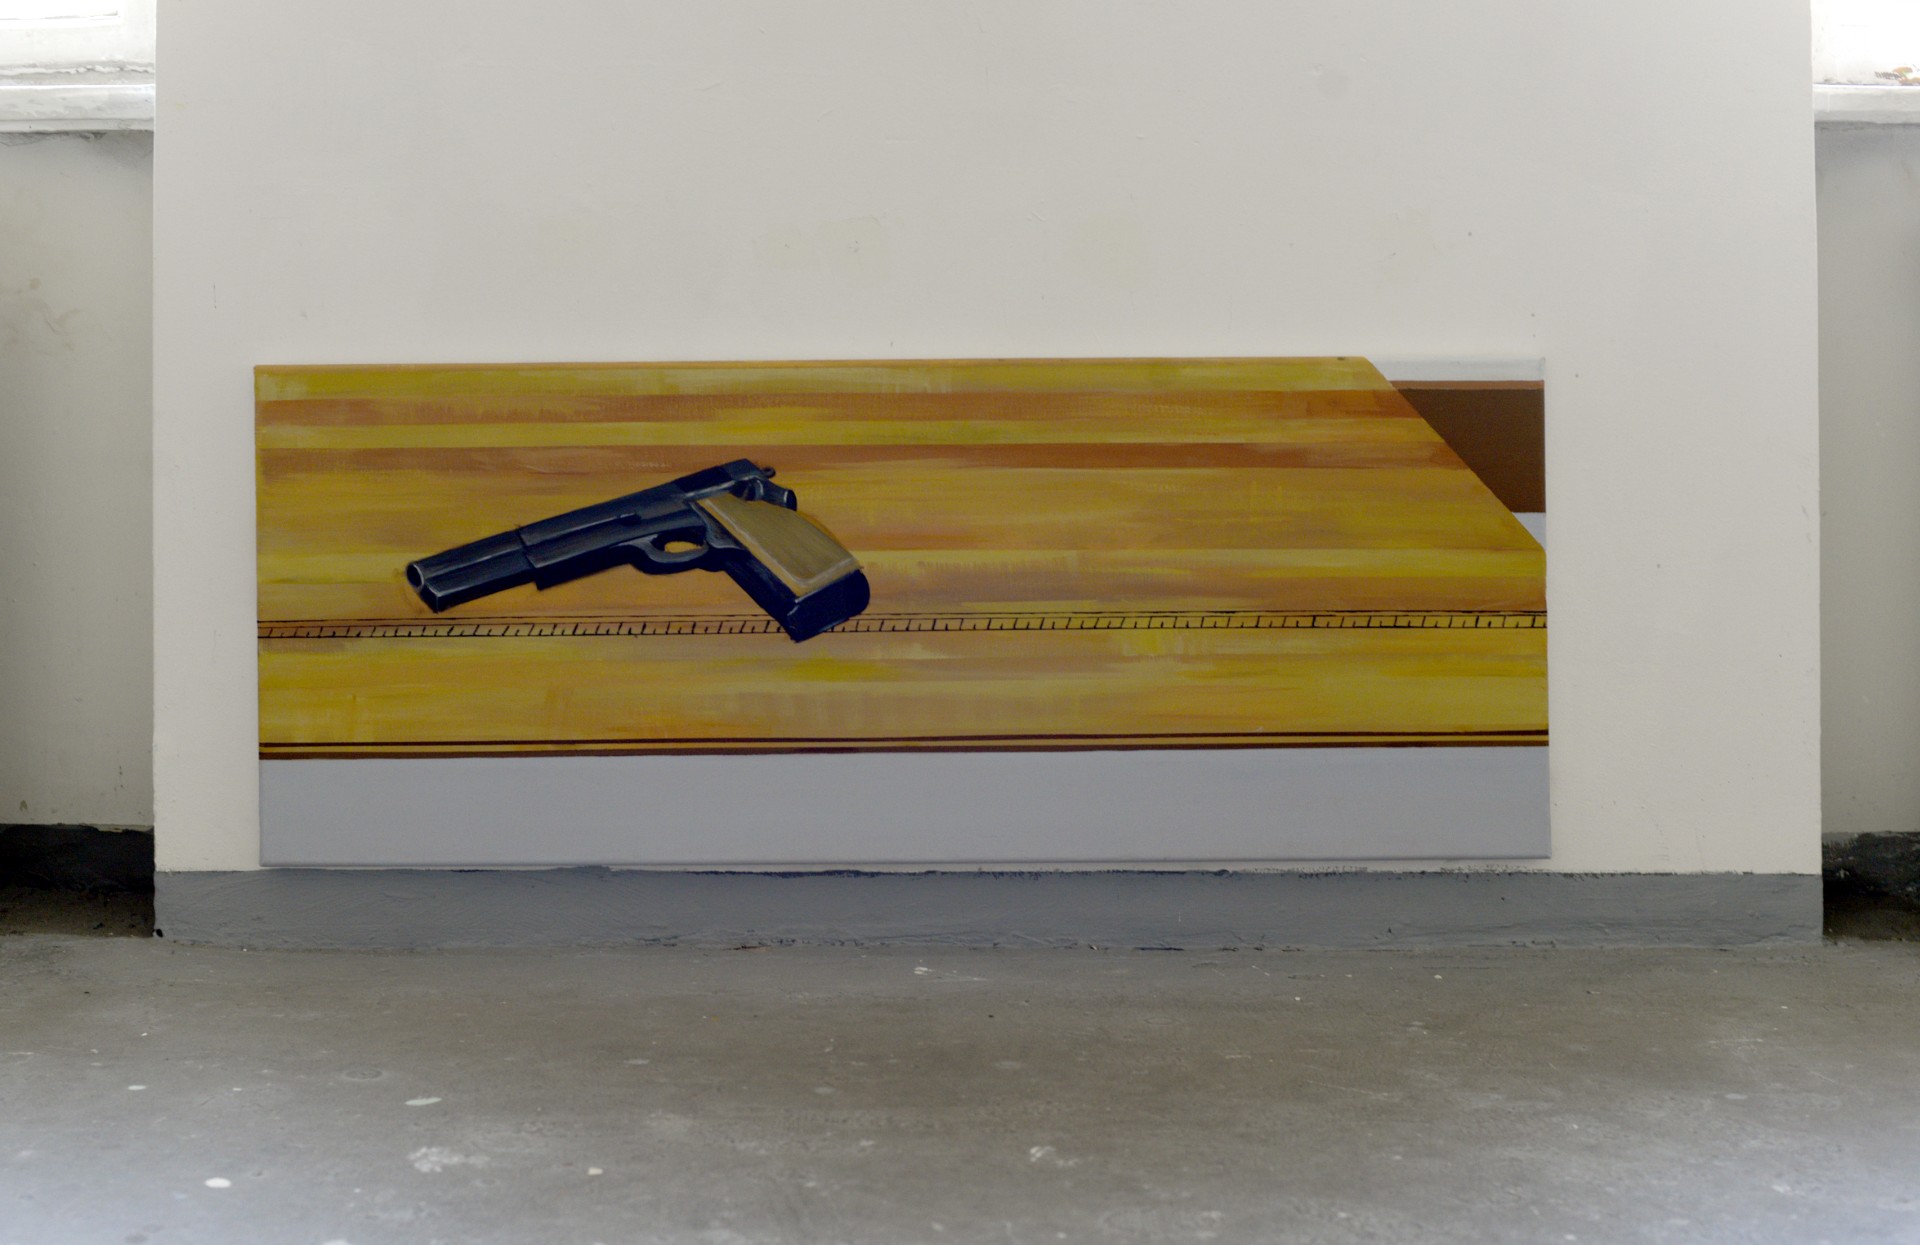 Obraz przedstawia pistolet leżący na drewnianym stole.